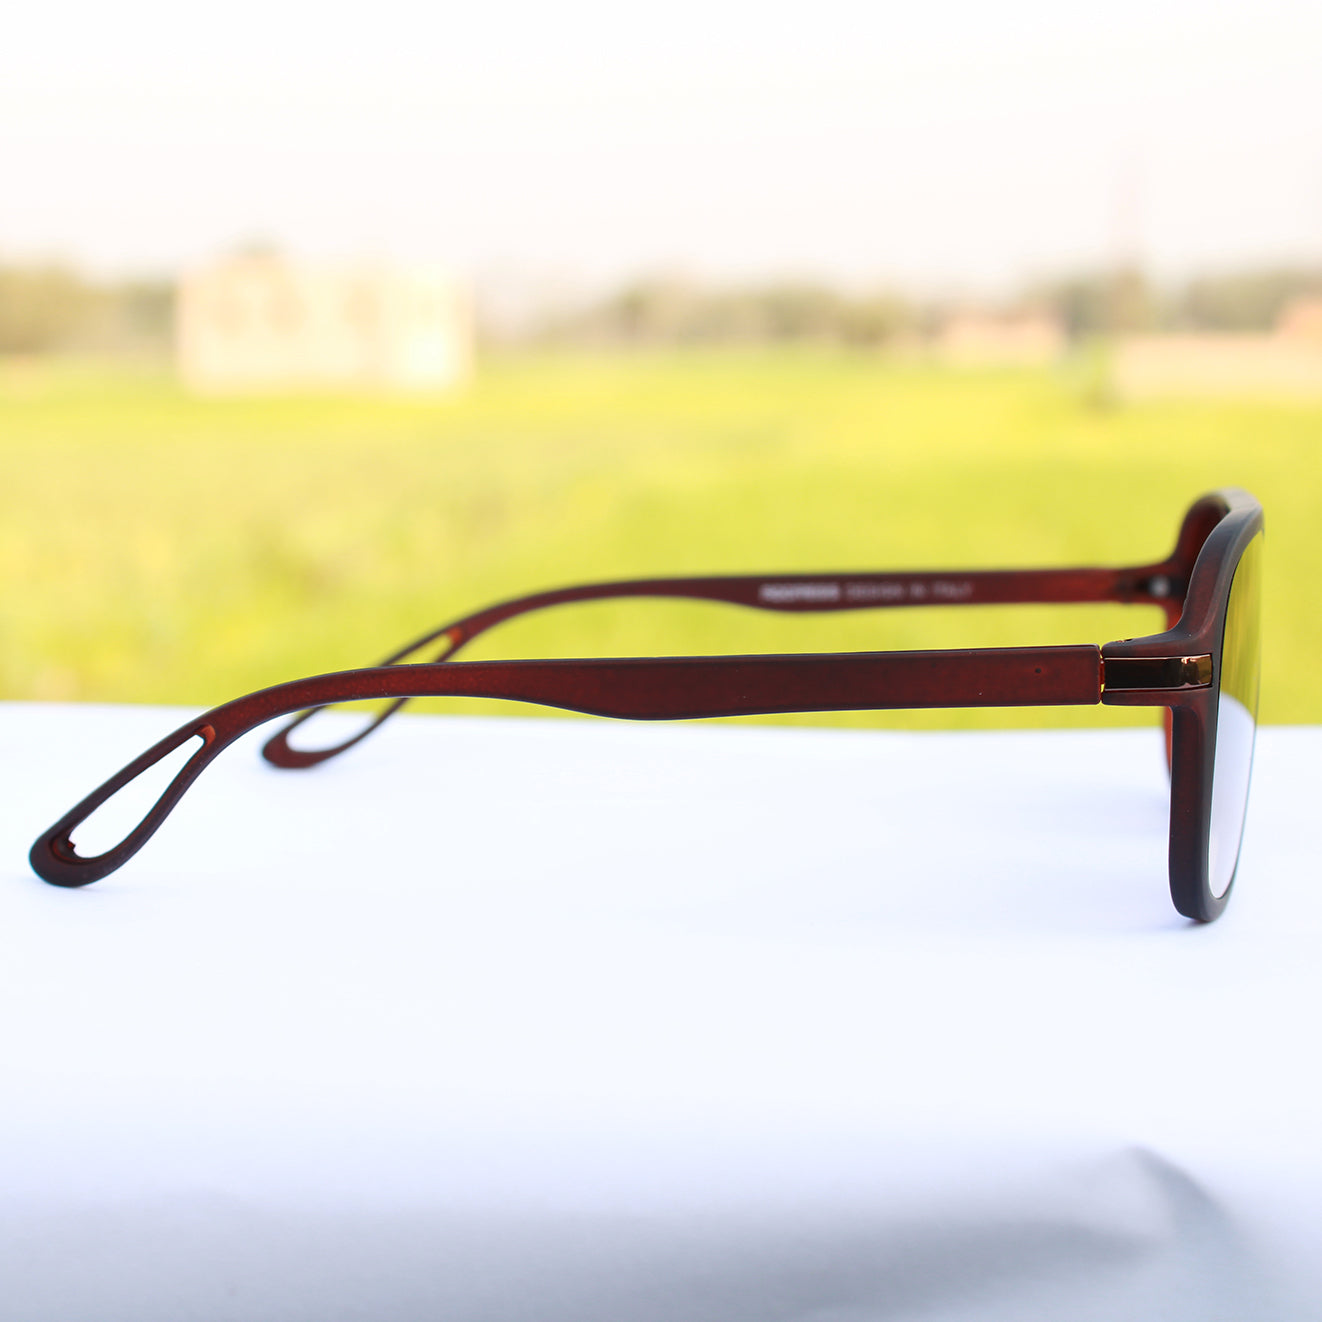 Jiebo Stylish Latest Amazon Trendy Desing Sunglasses